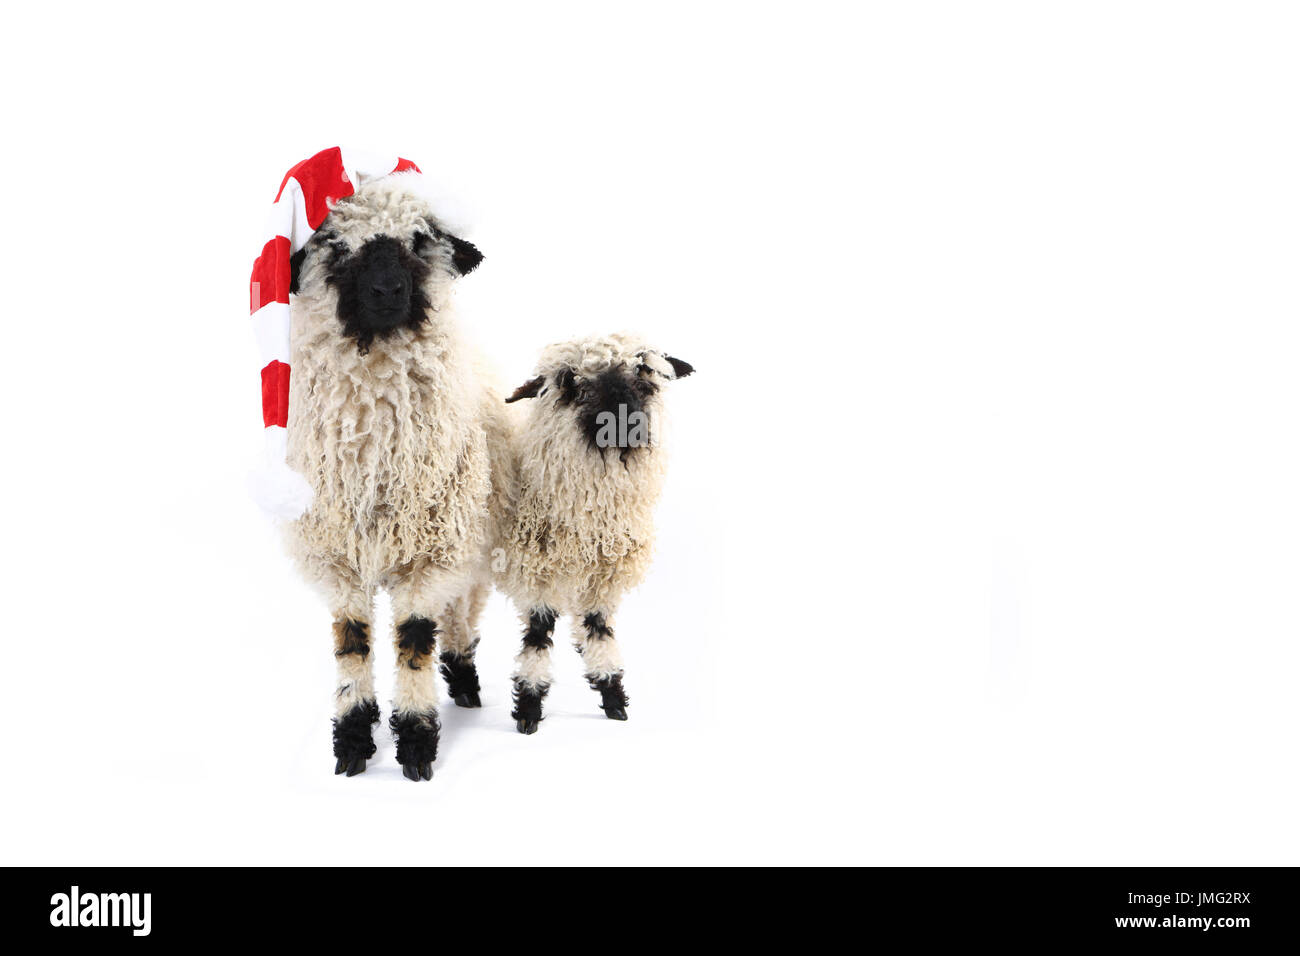 Le Valais les moutons. Deux agneaux debout, l'un d'entre eux portant Santa Claus hat. Studio photo sur un fond blanc. Allemagne Banque D'Images